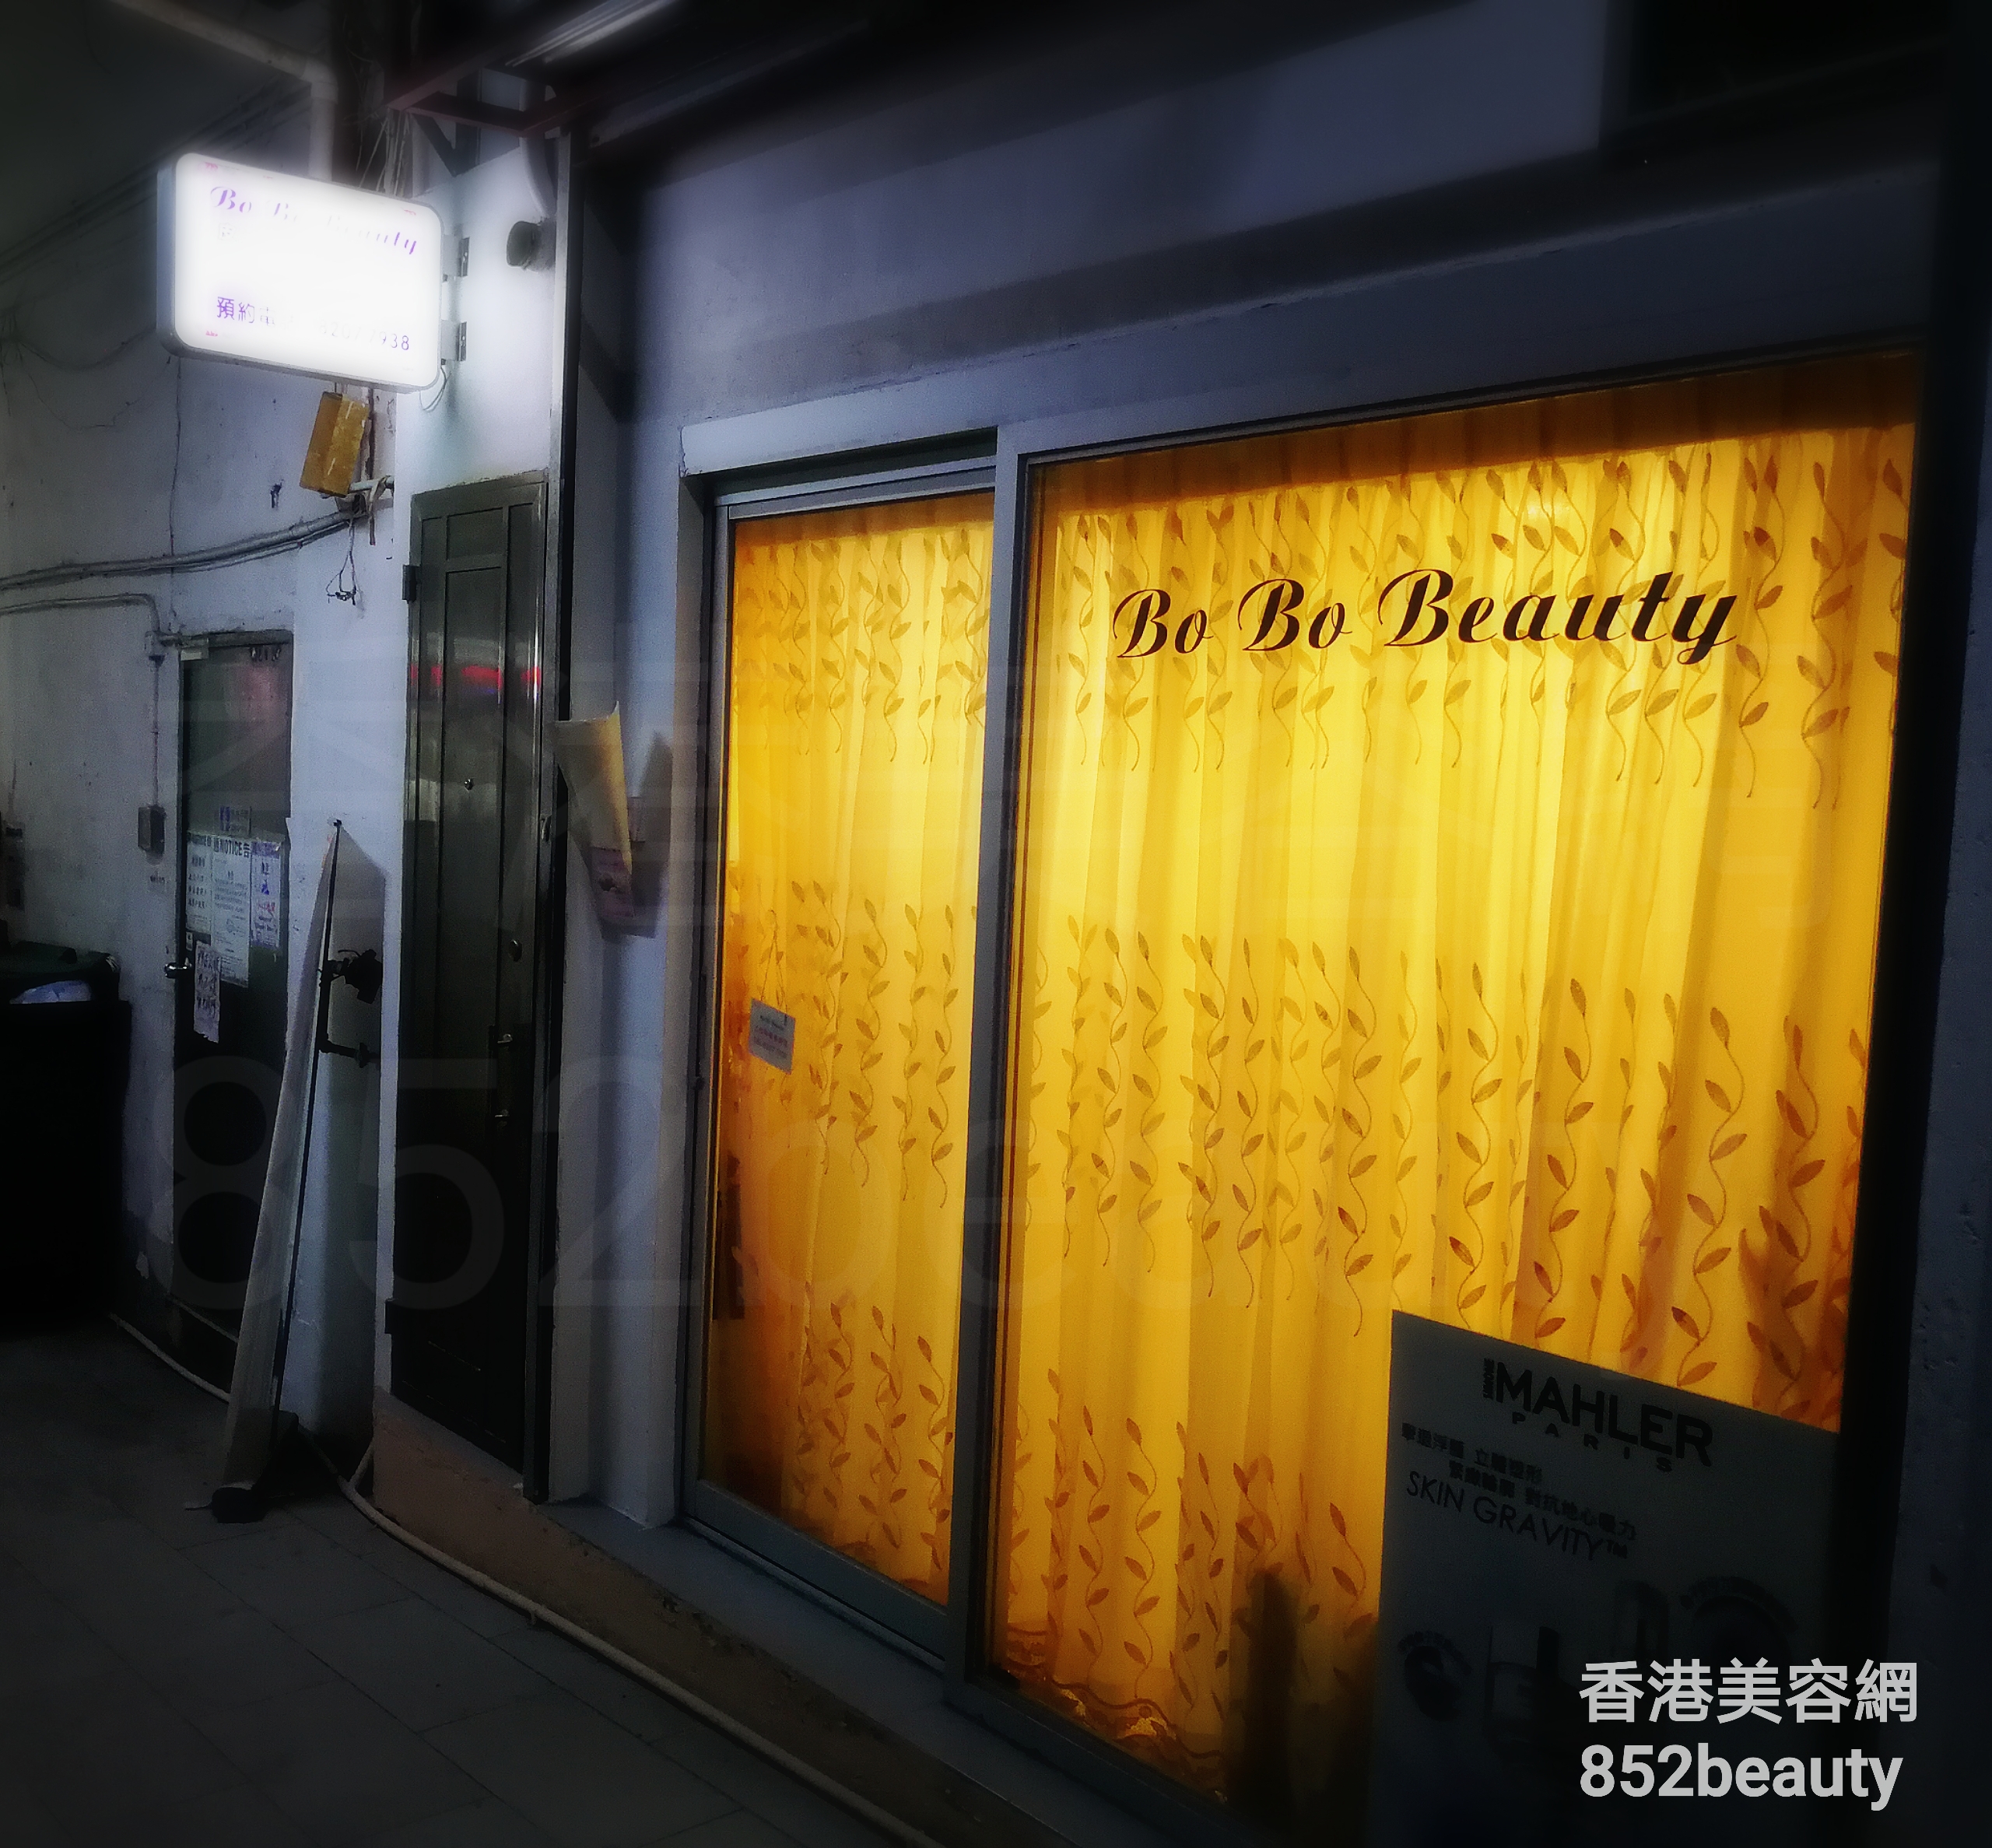 脫毛: Bo Bo Beauty